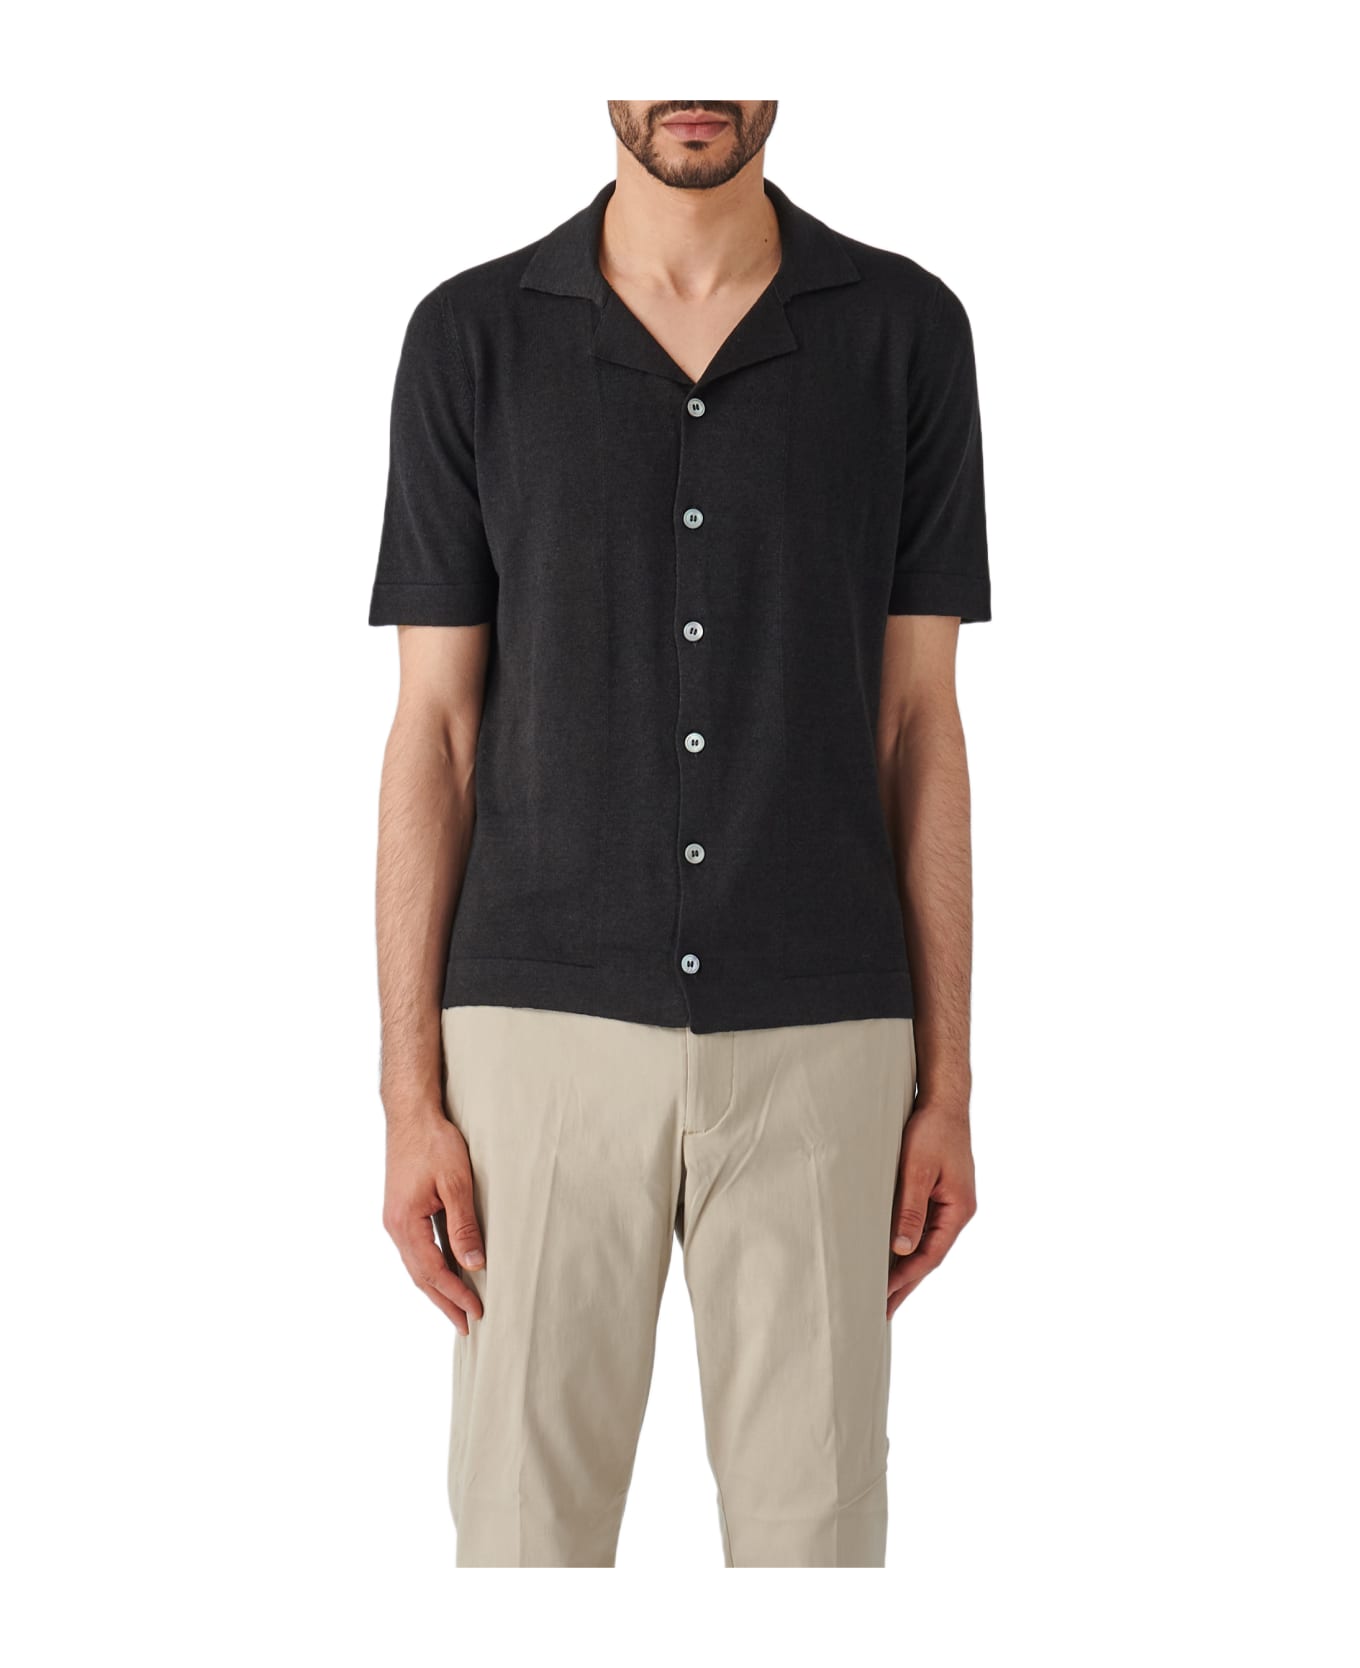 Gran Sasso Camicia M/m Shirt - NERO シャツ